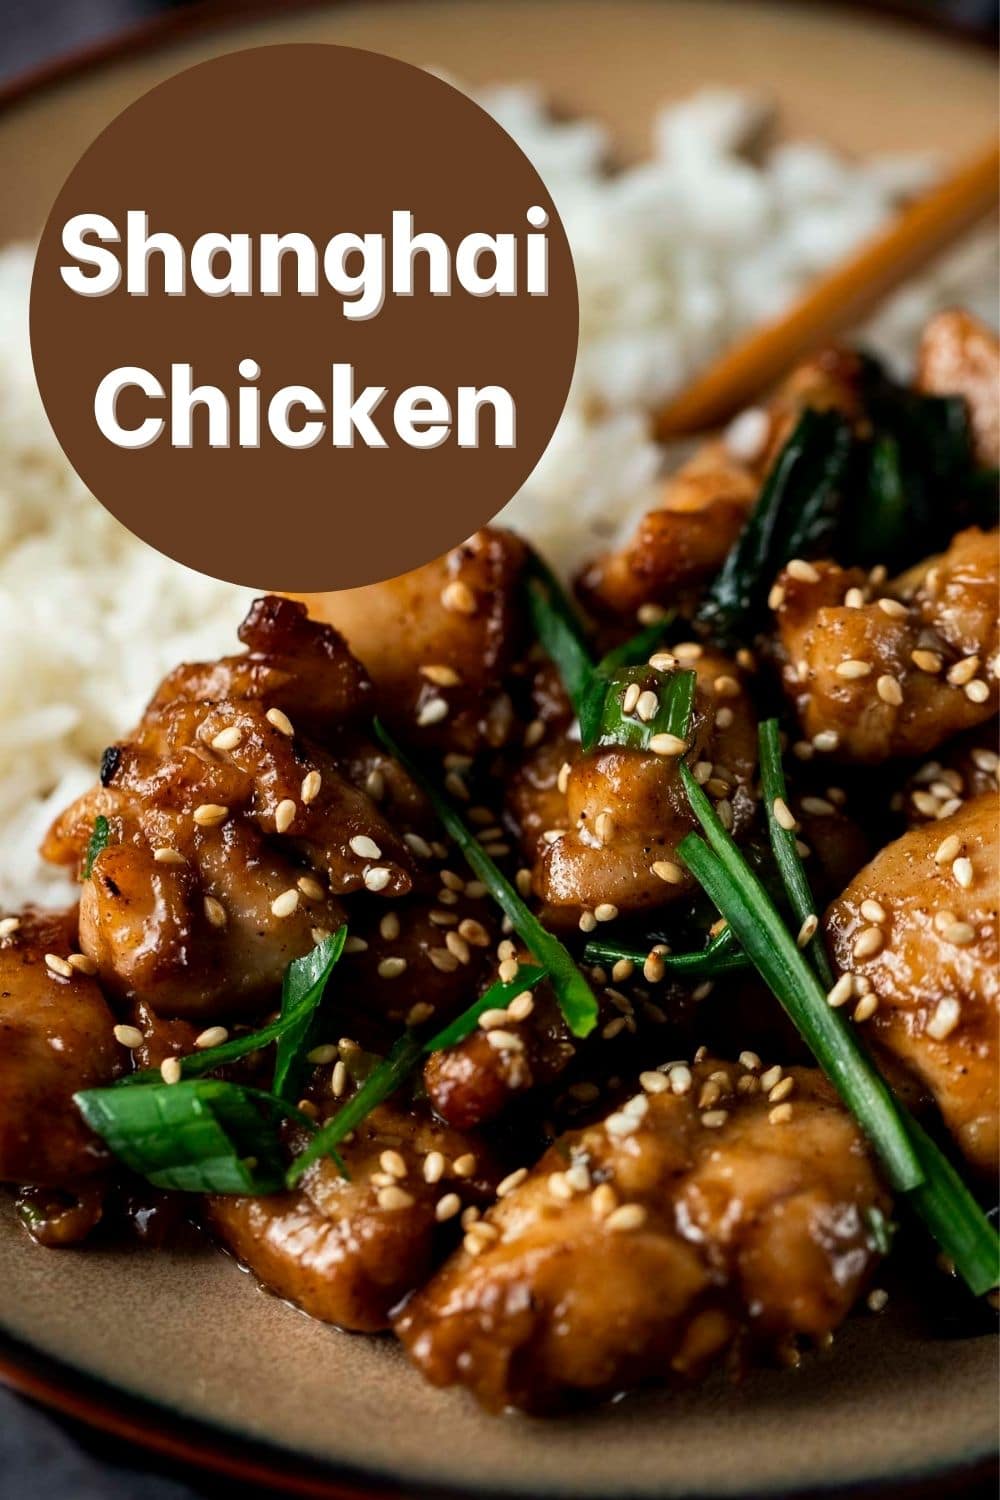 Shanghai Chicken